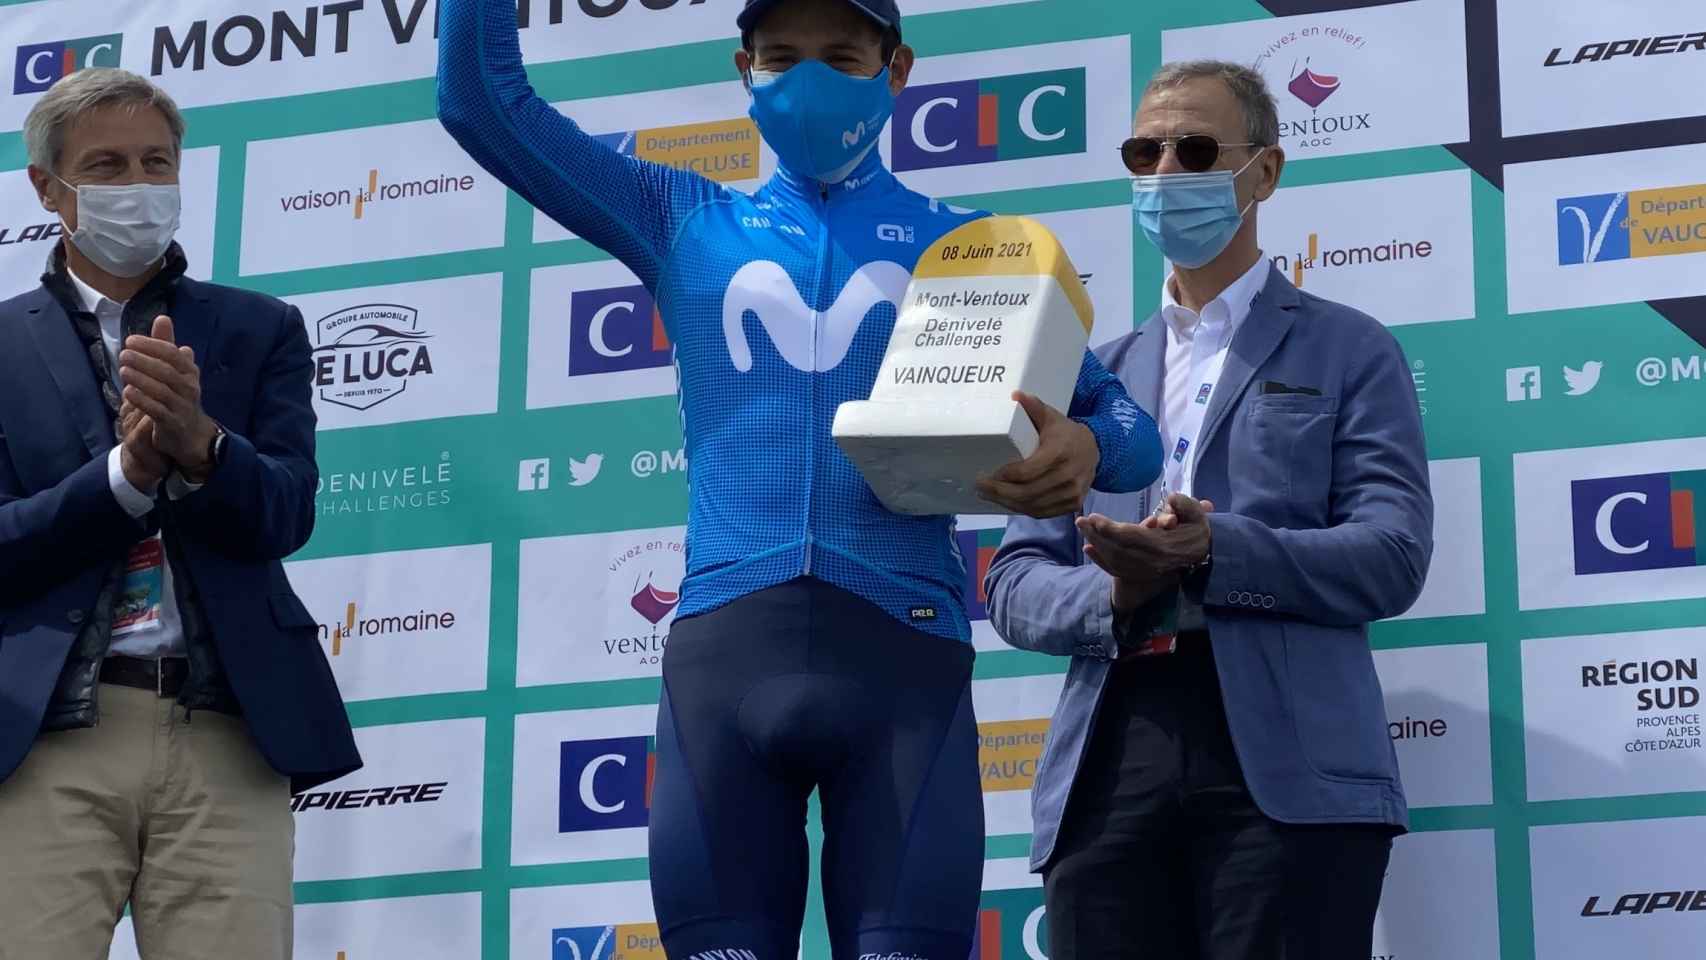 Miguel Ángel López, con el trofeo de la Mont Ventoux Denivele Challenge de 2021